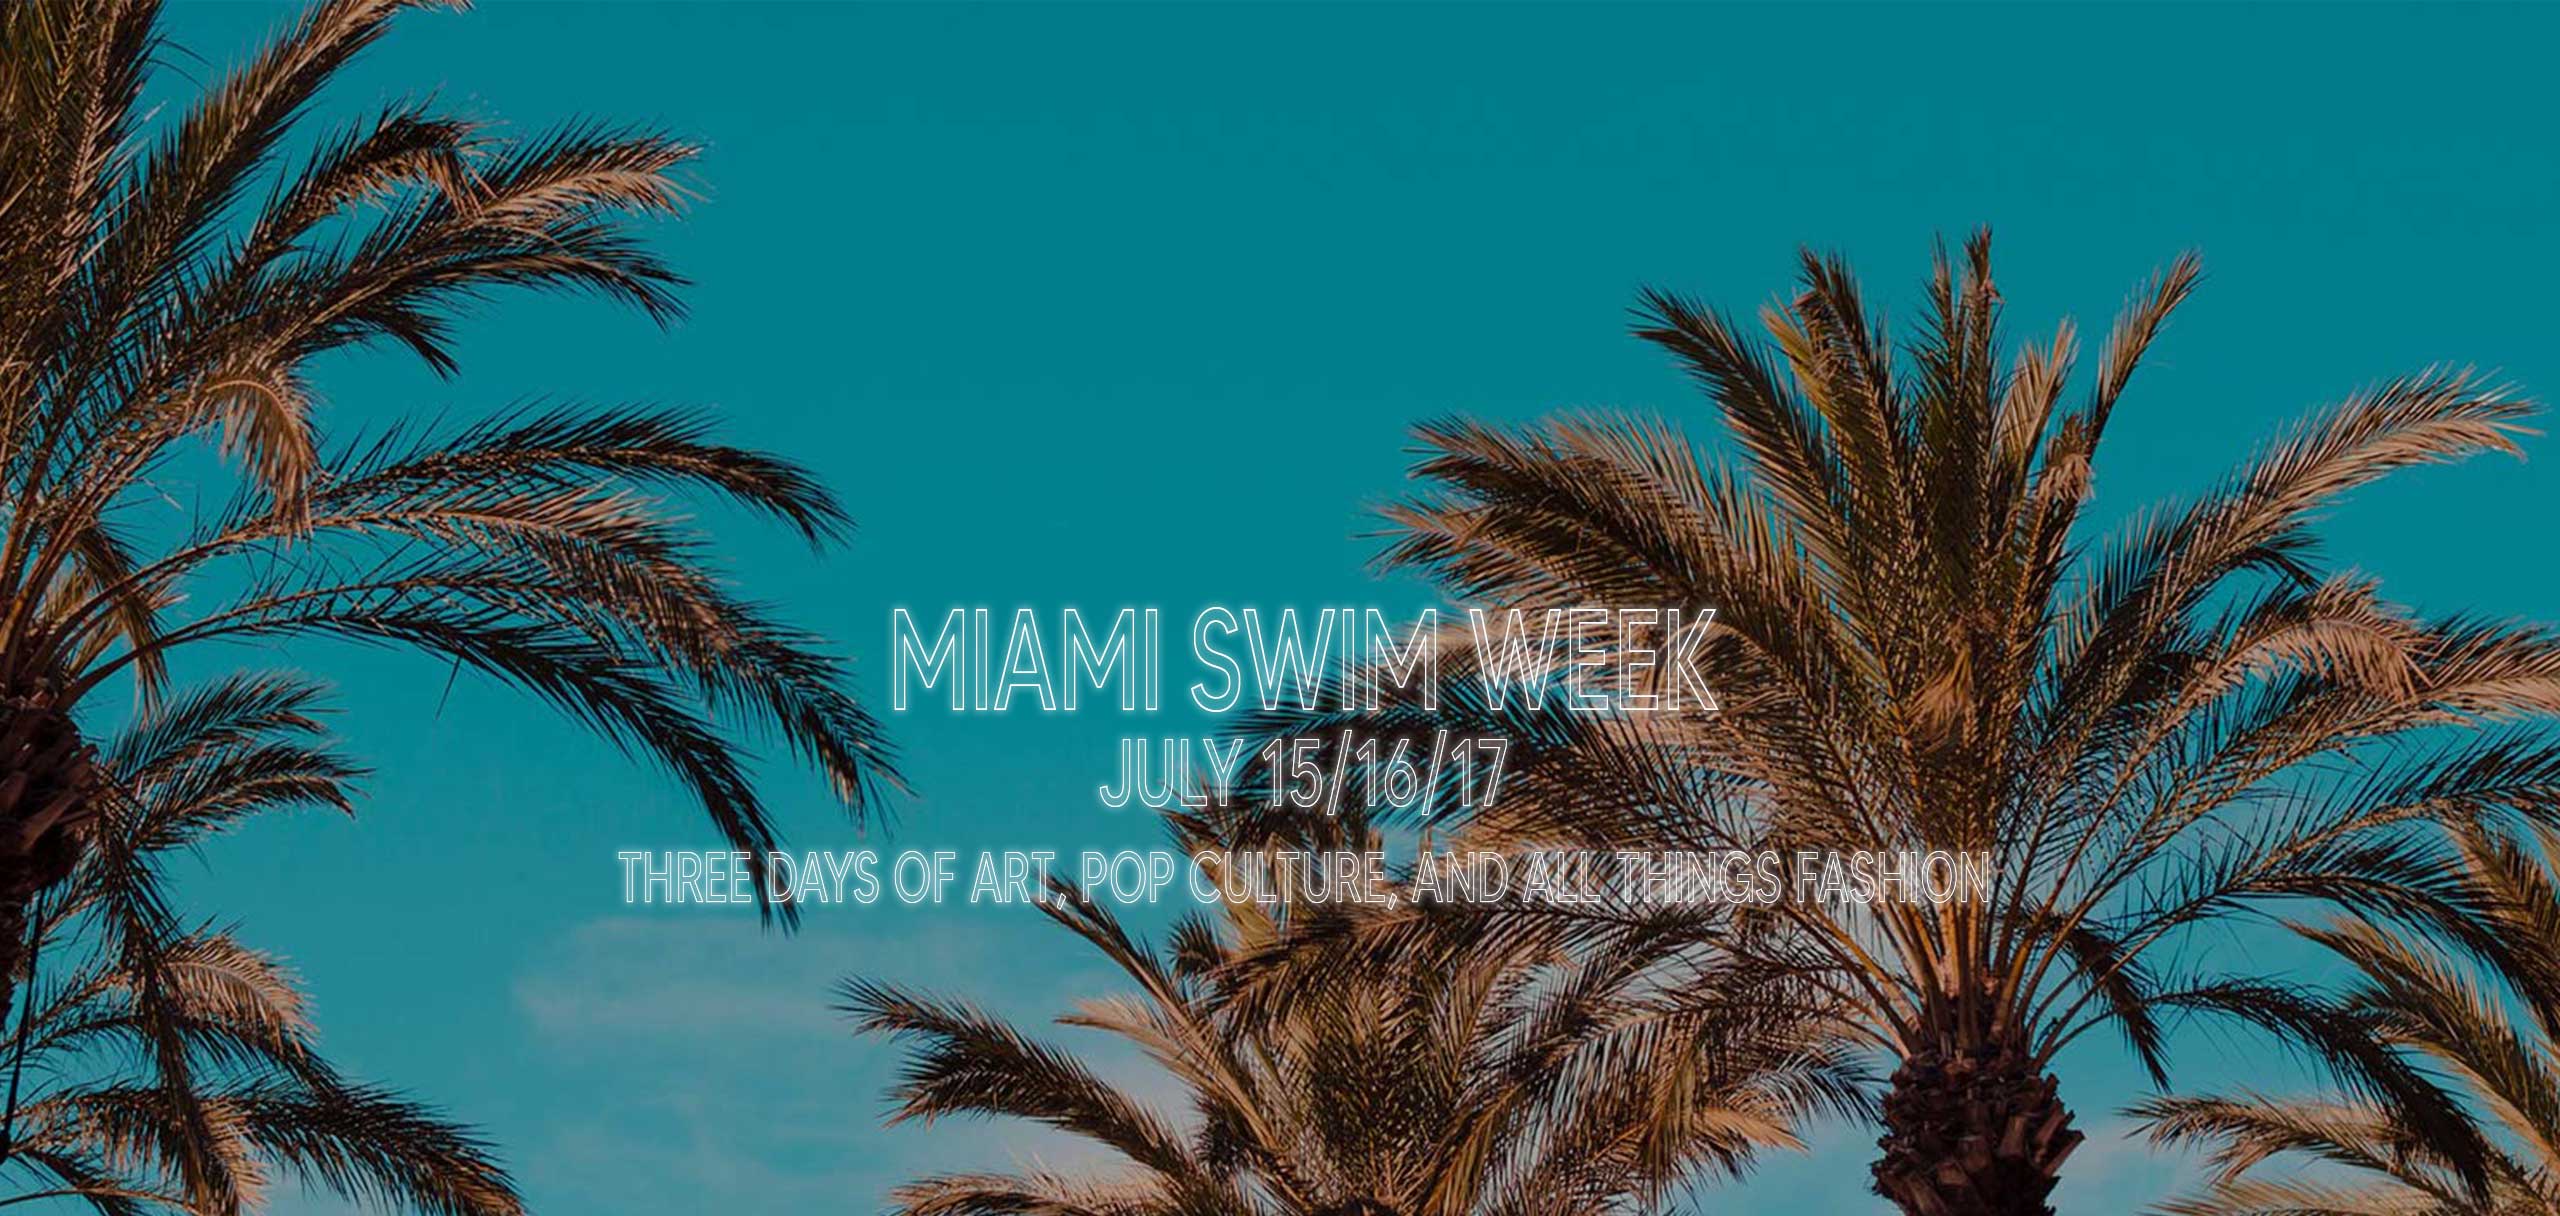 Miami Swim Week Tickets